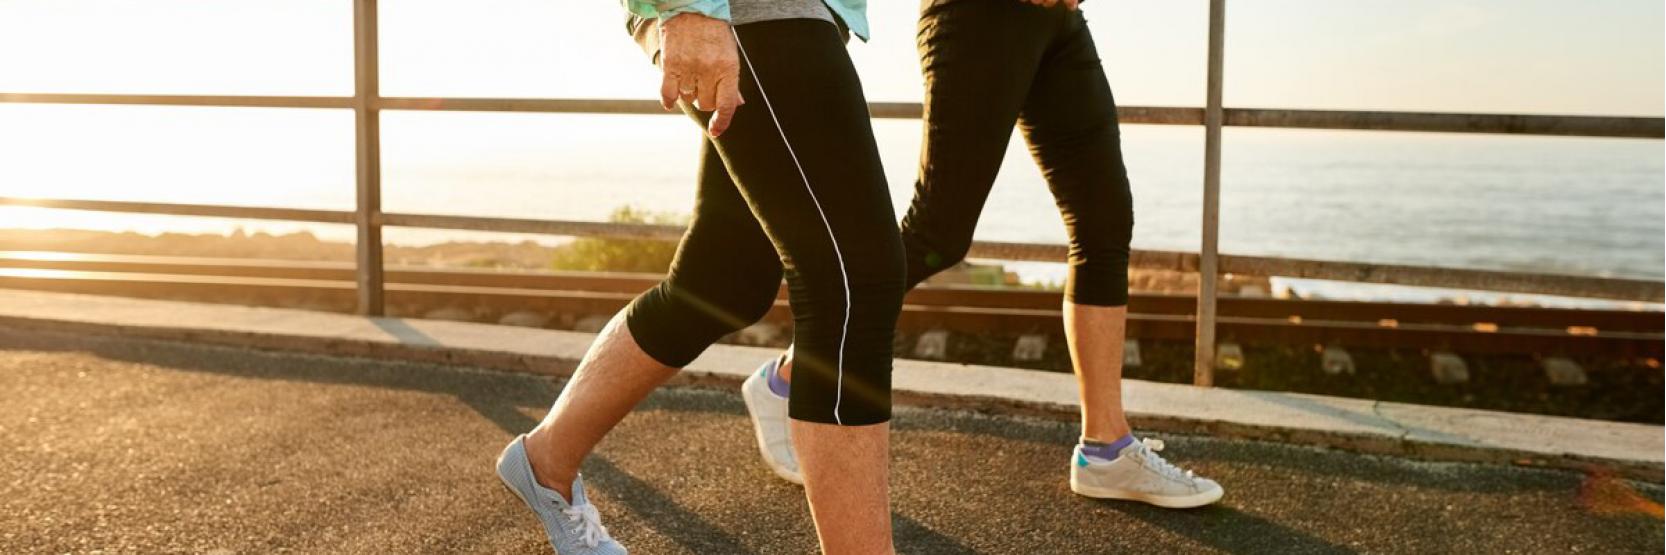 كيف يمكن للمشي أن يساعدك في الحفاظ على الوزن